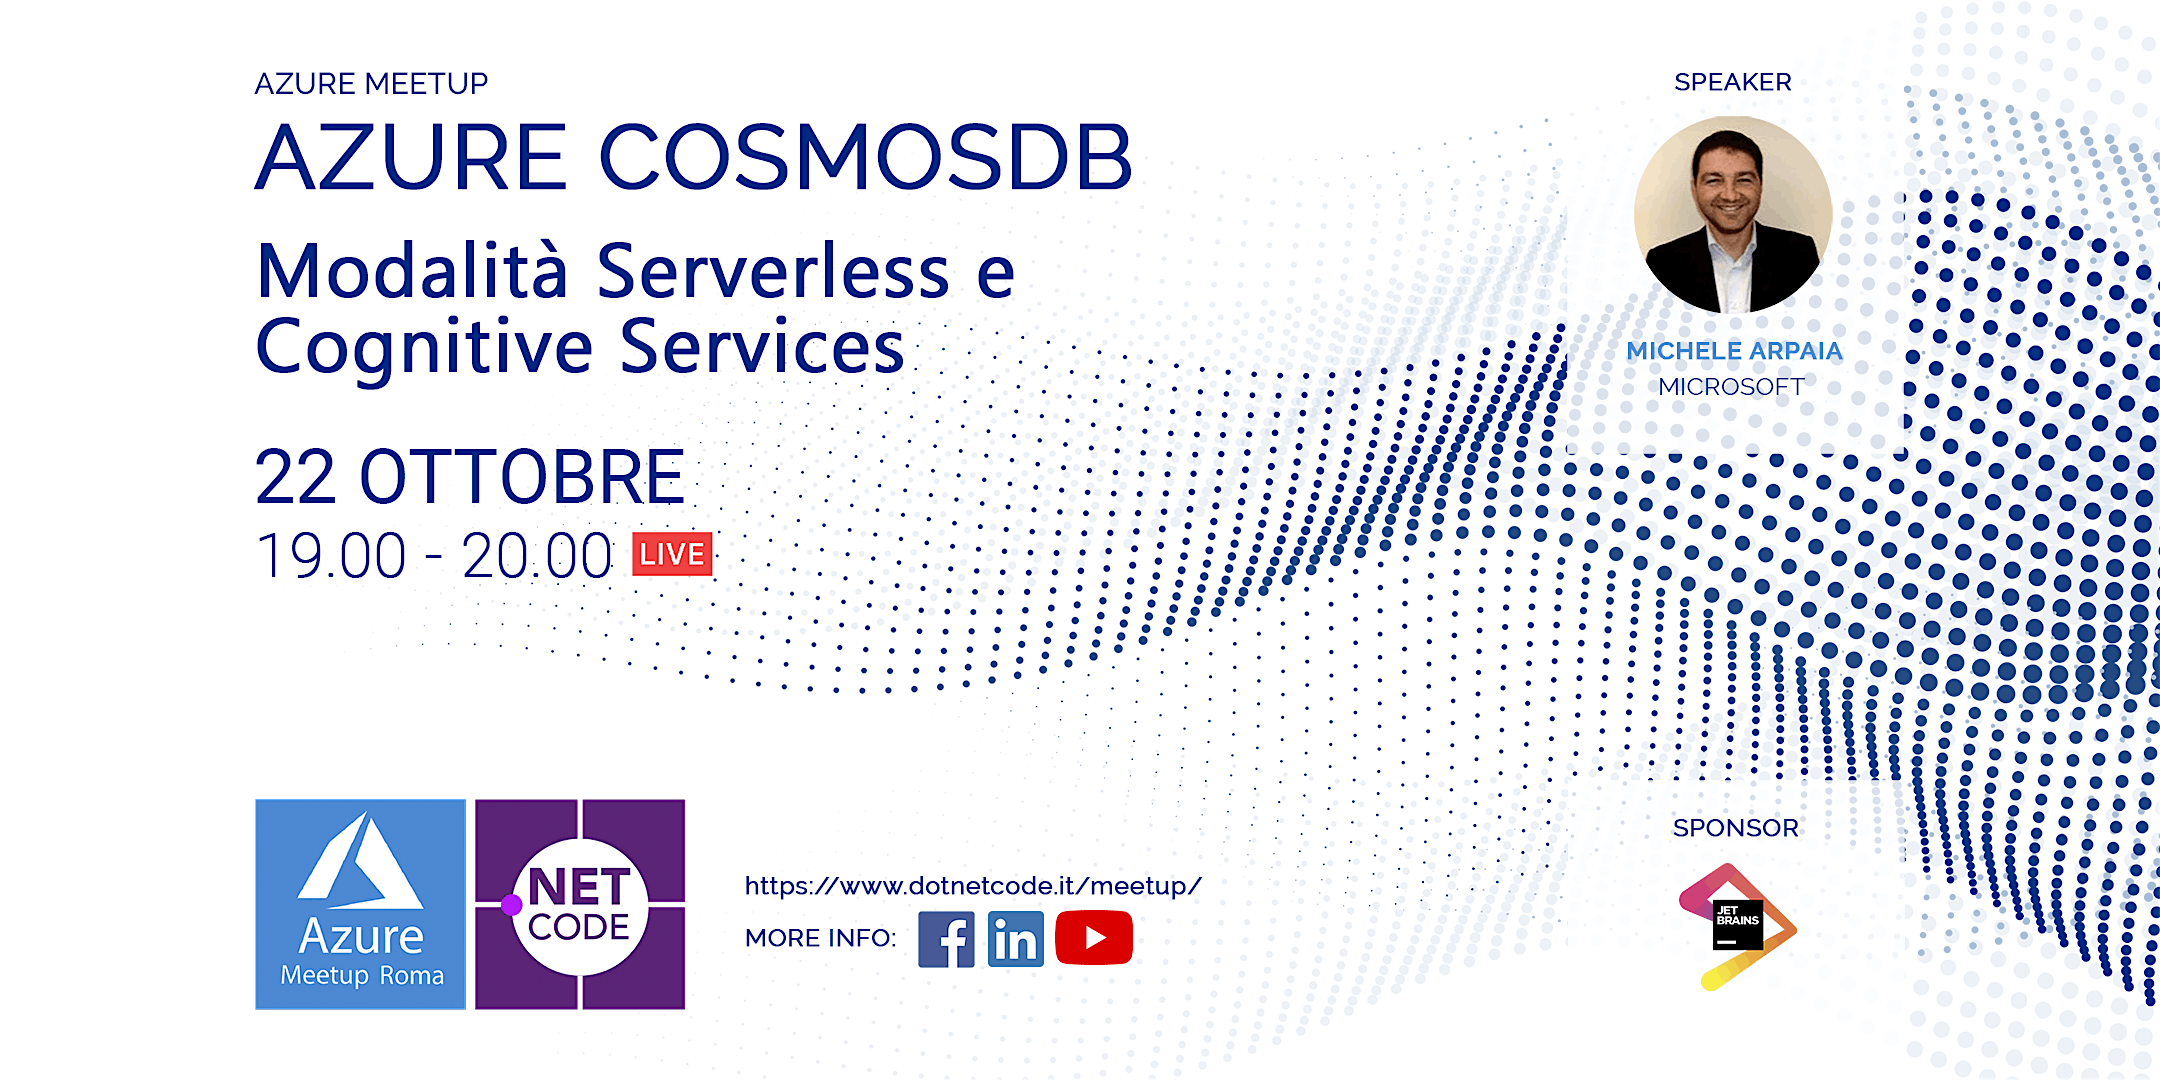 Azure Meetup: Novità CosmosDB modalità Serverless e Cognitive Services